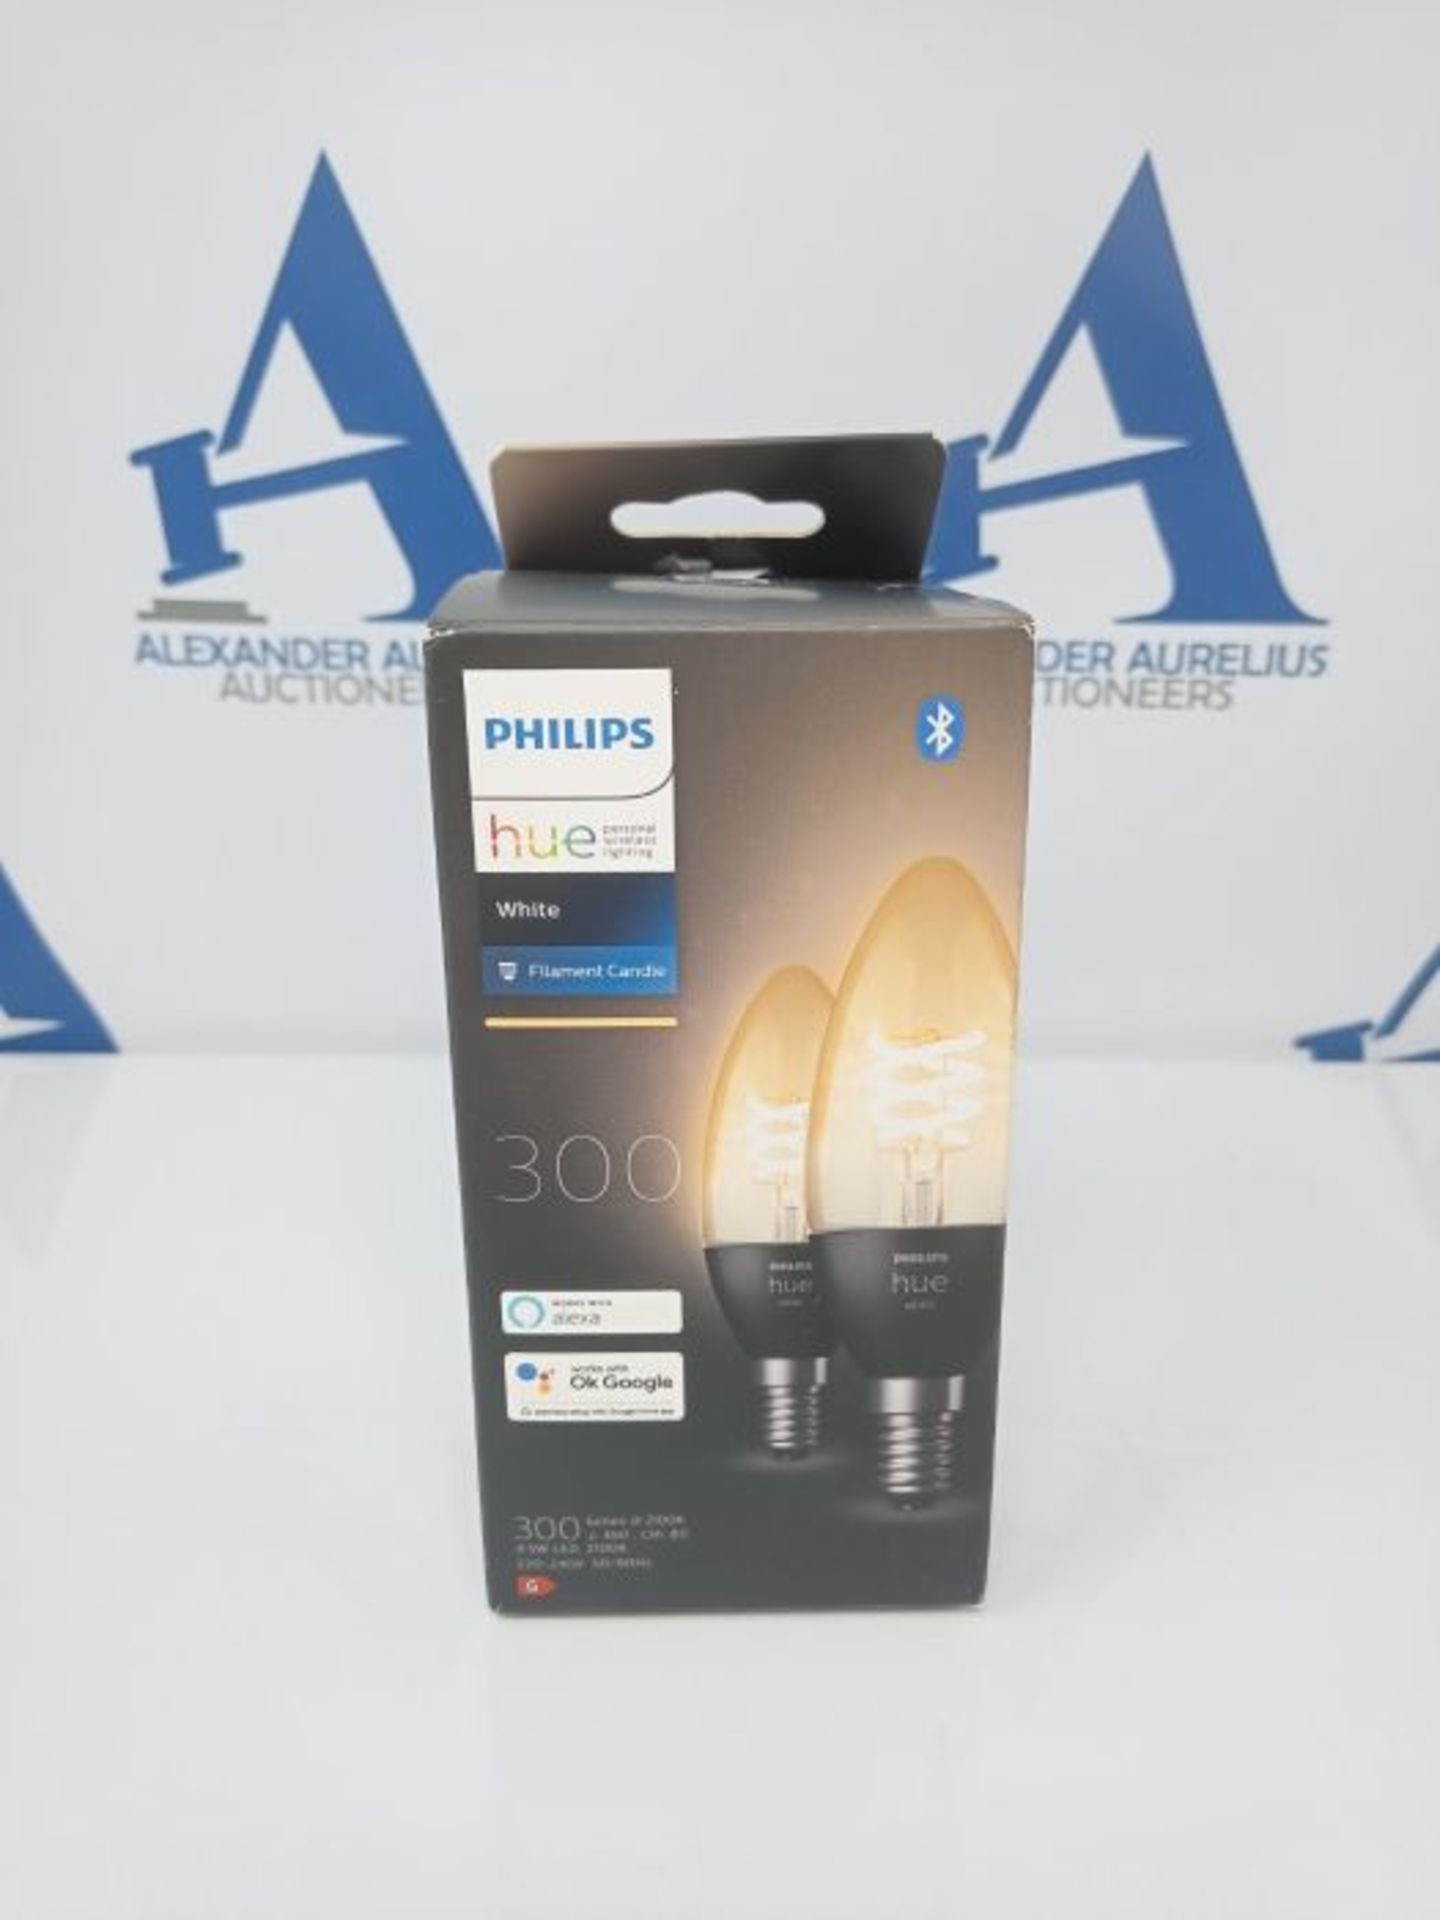 Philips Hue White 2 Lampadine LED Smart, con Bluetooth, Attacco E14, 4.5 W, Dimmerabil - Image 2 of 3